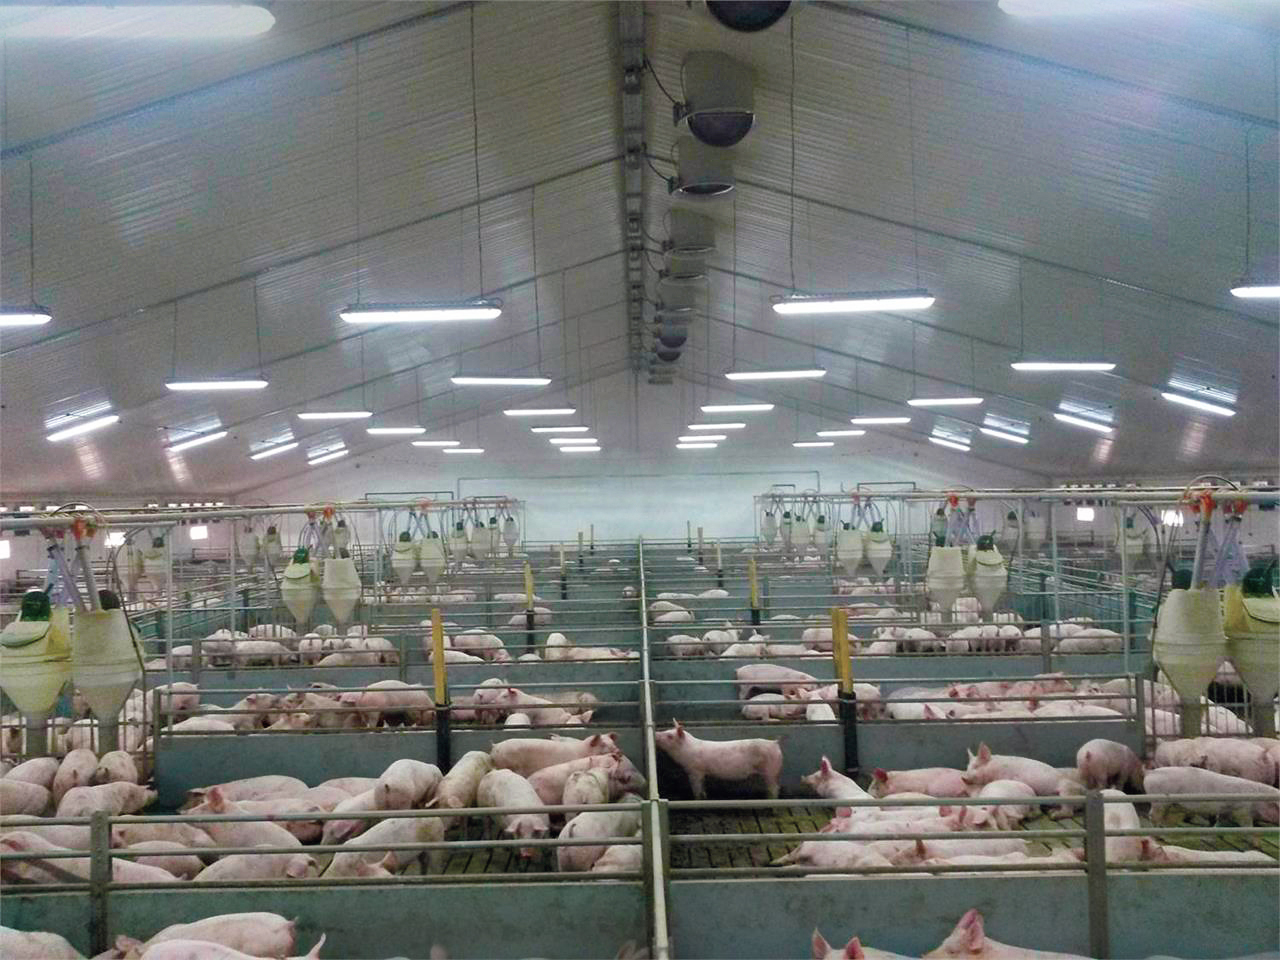 Pesta porcină africană a ajuns şi la DAB Zootehnica din Tulcea, cea de-a treia fermă comercială decimată de virus